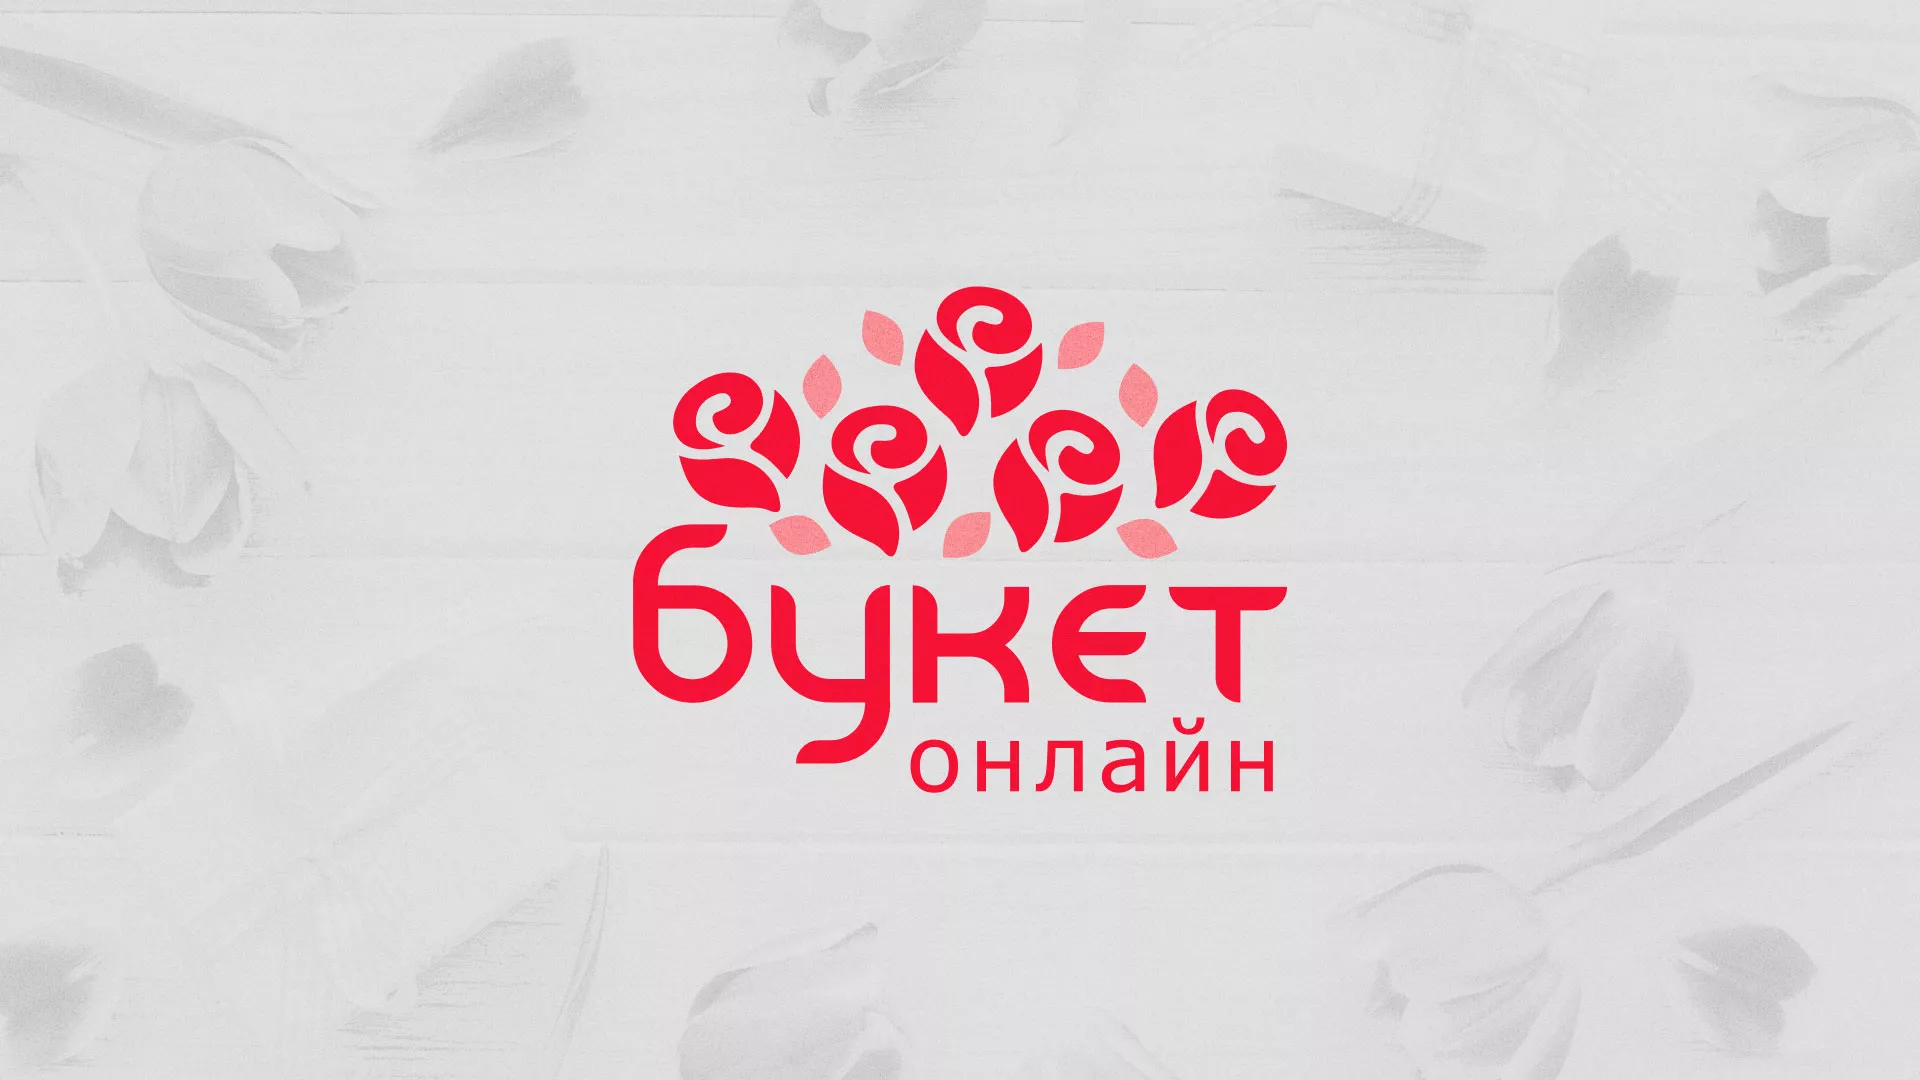 Создание интернет-магазина «Букет-онлайн» по цветам в Зверево